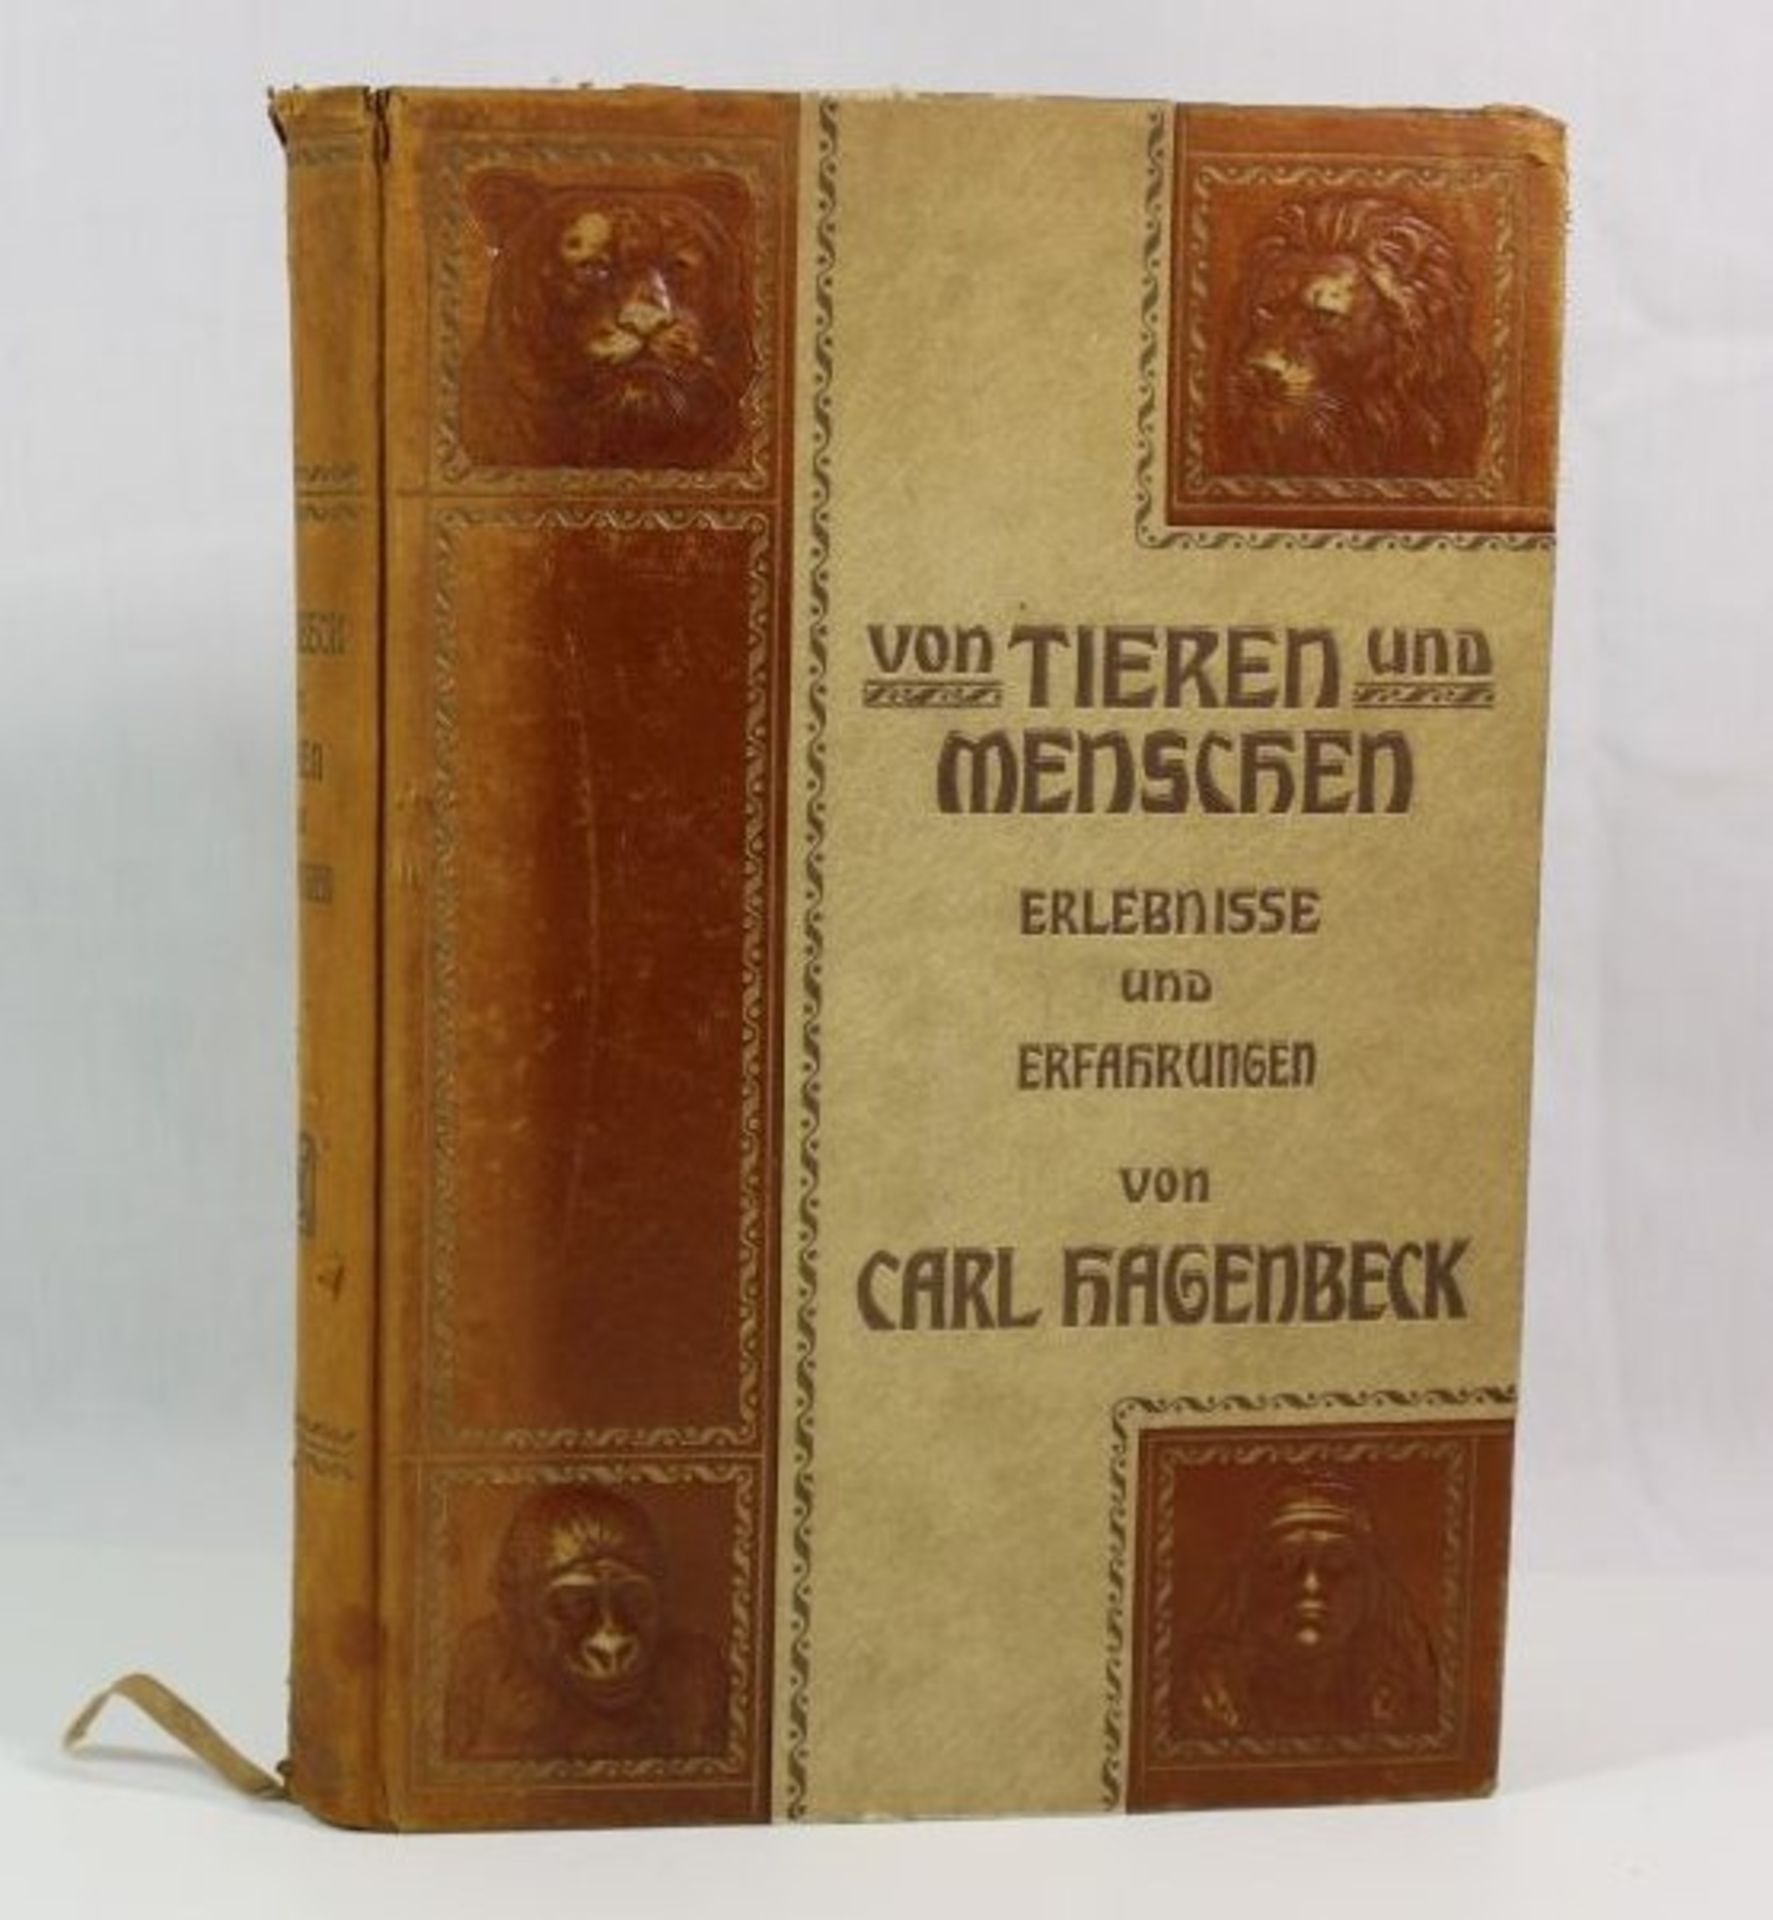 Von Tieren und Menschen - Erlebnisse und Erfahrungen, Carl Hagenbeck, 1908, Alters-u.